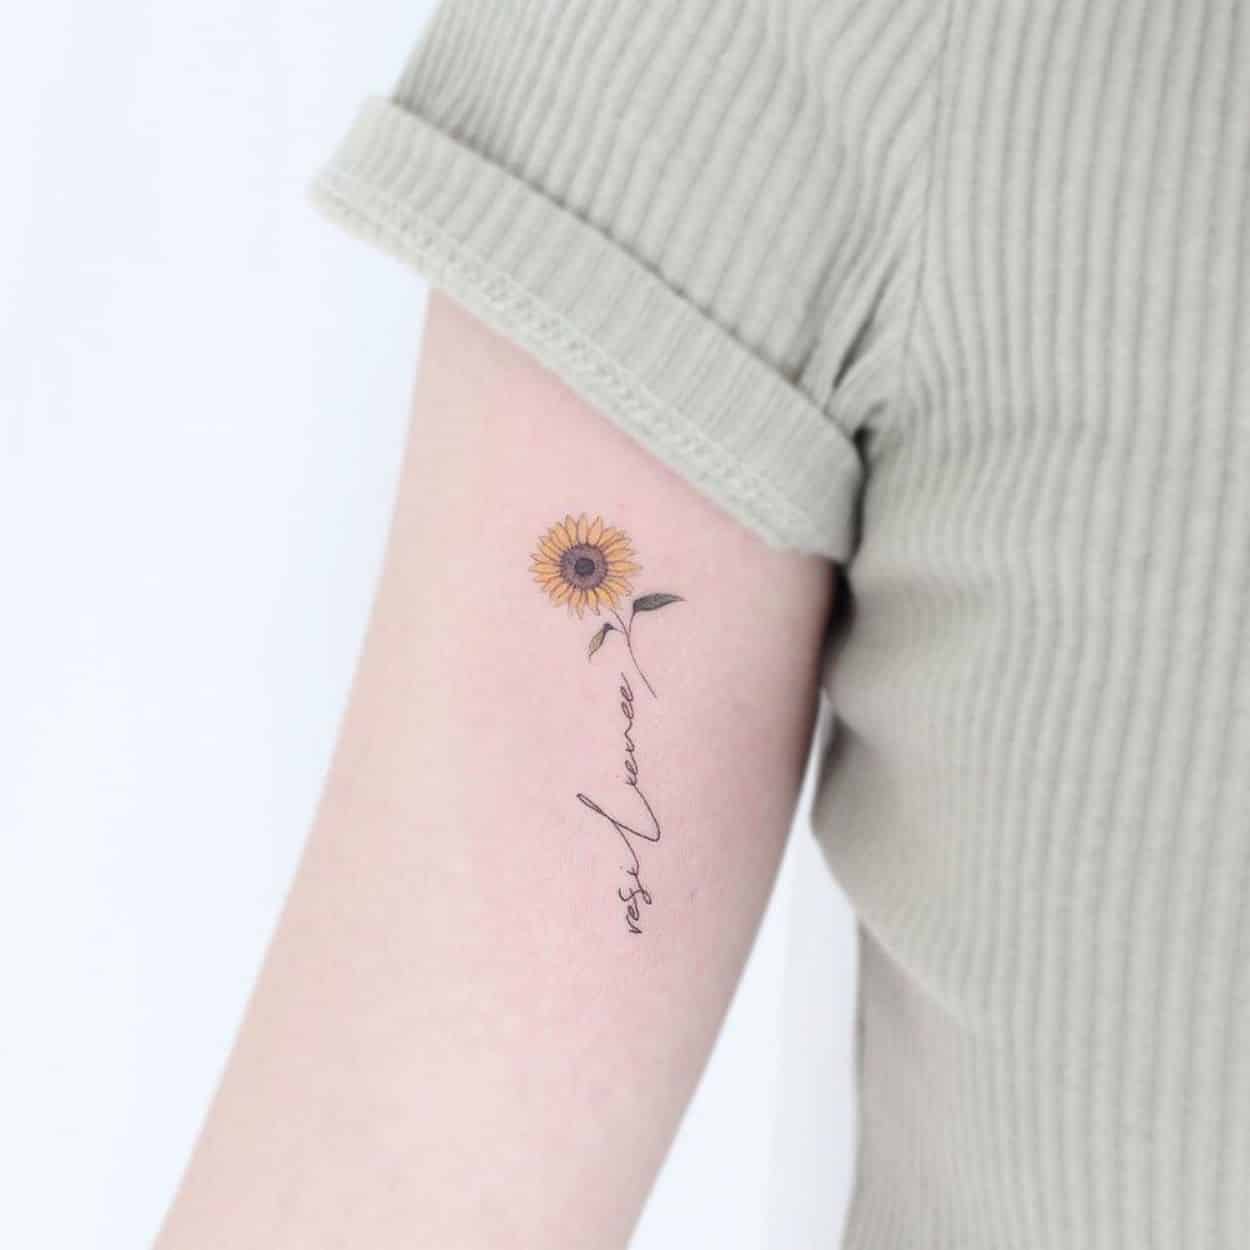 tatuagem feminina no braço - imagem de inspiração